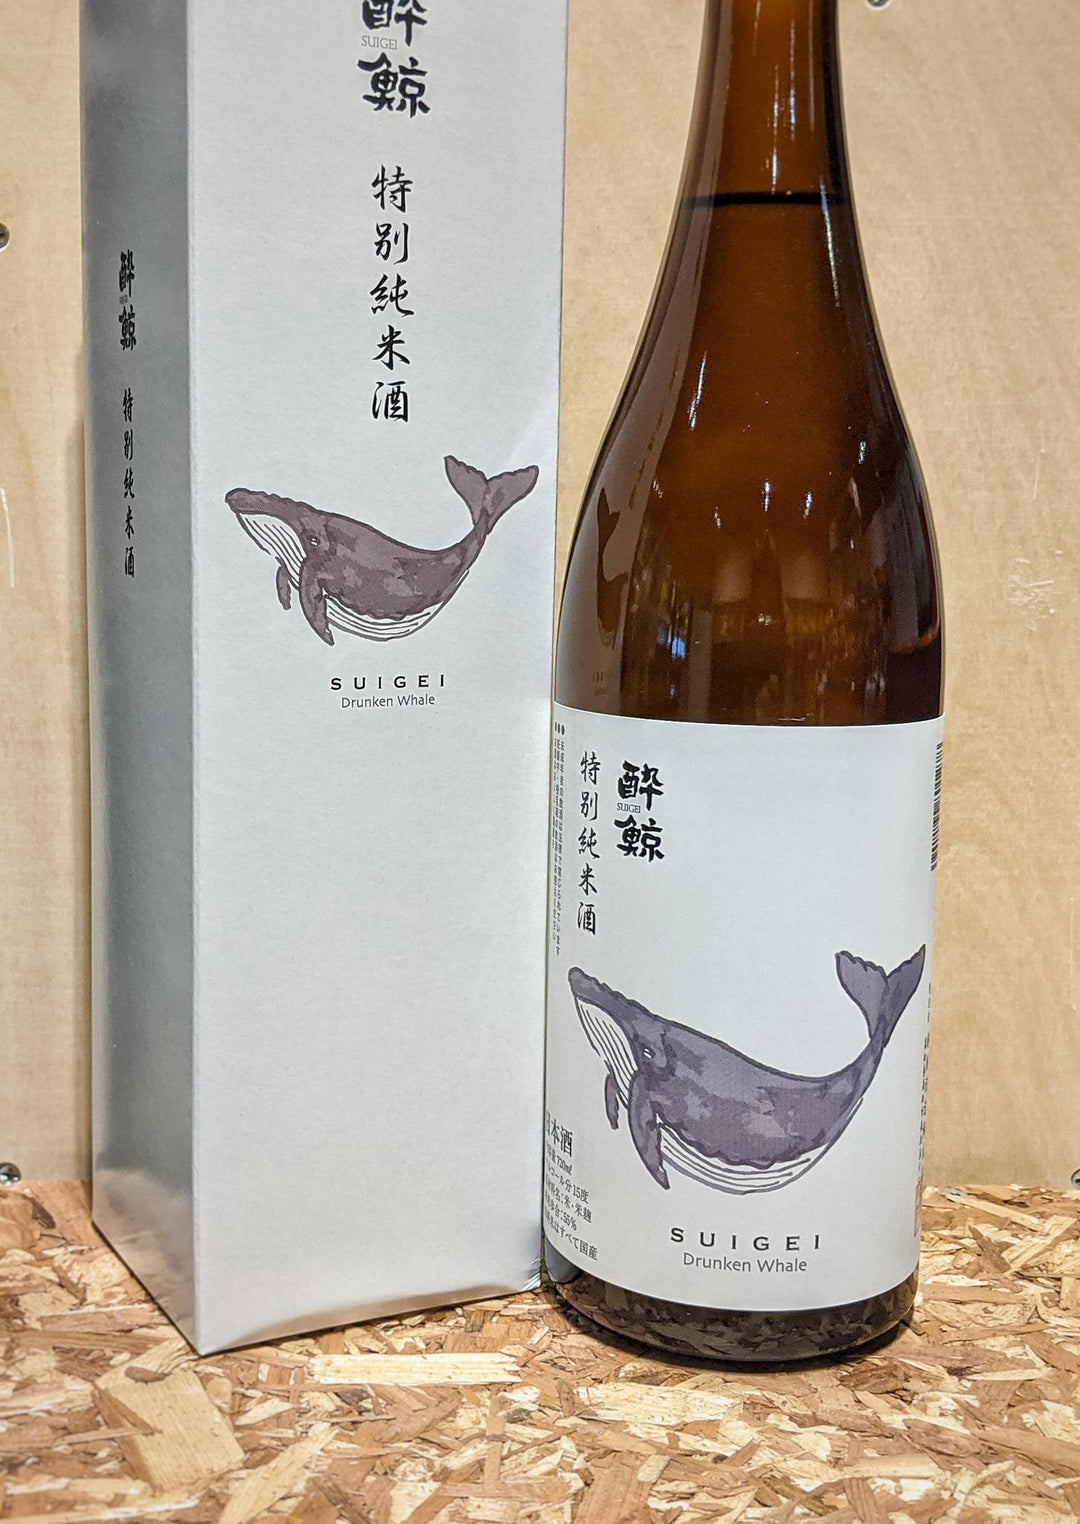 Suigei Tokubetsu 'Drunken Whale' Junmai Sake (Kochi, Japan)